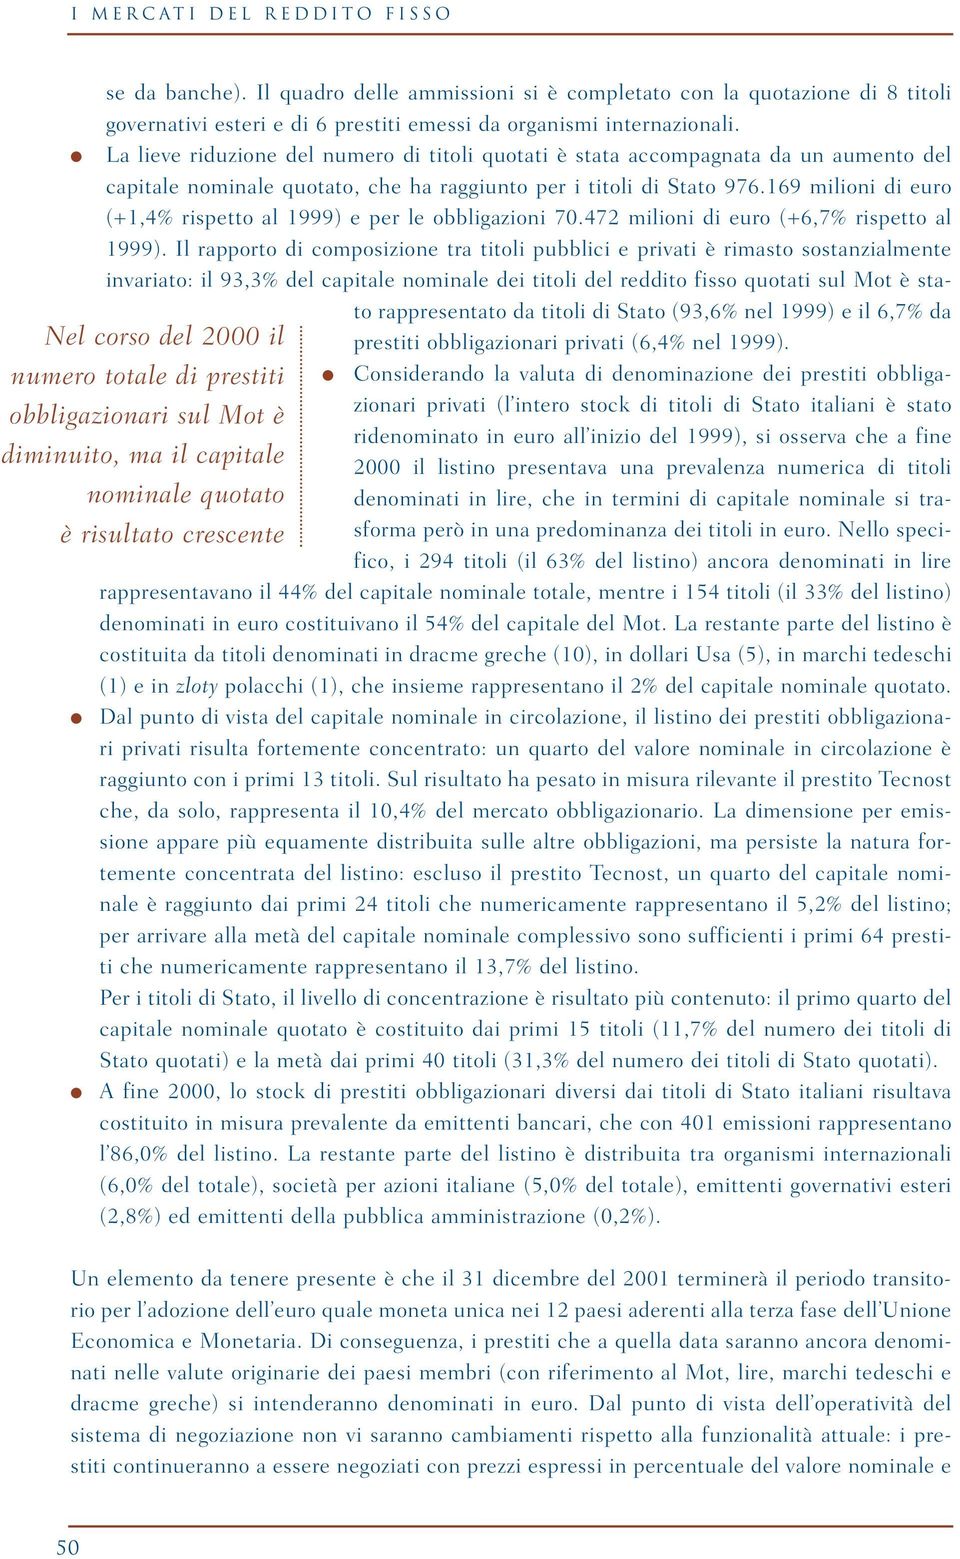 169 milioni di euro (+1,4% rispetto al 1999) e per le obbligazioni 70.472 milioni di euro (+6,7% rispetto al 1999).